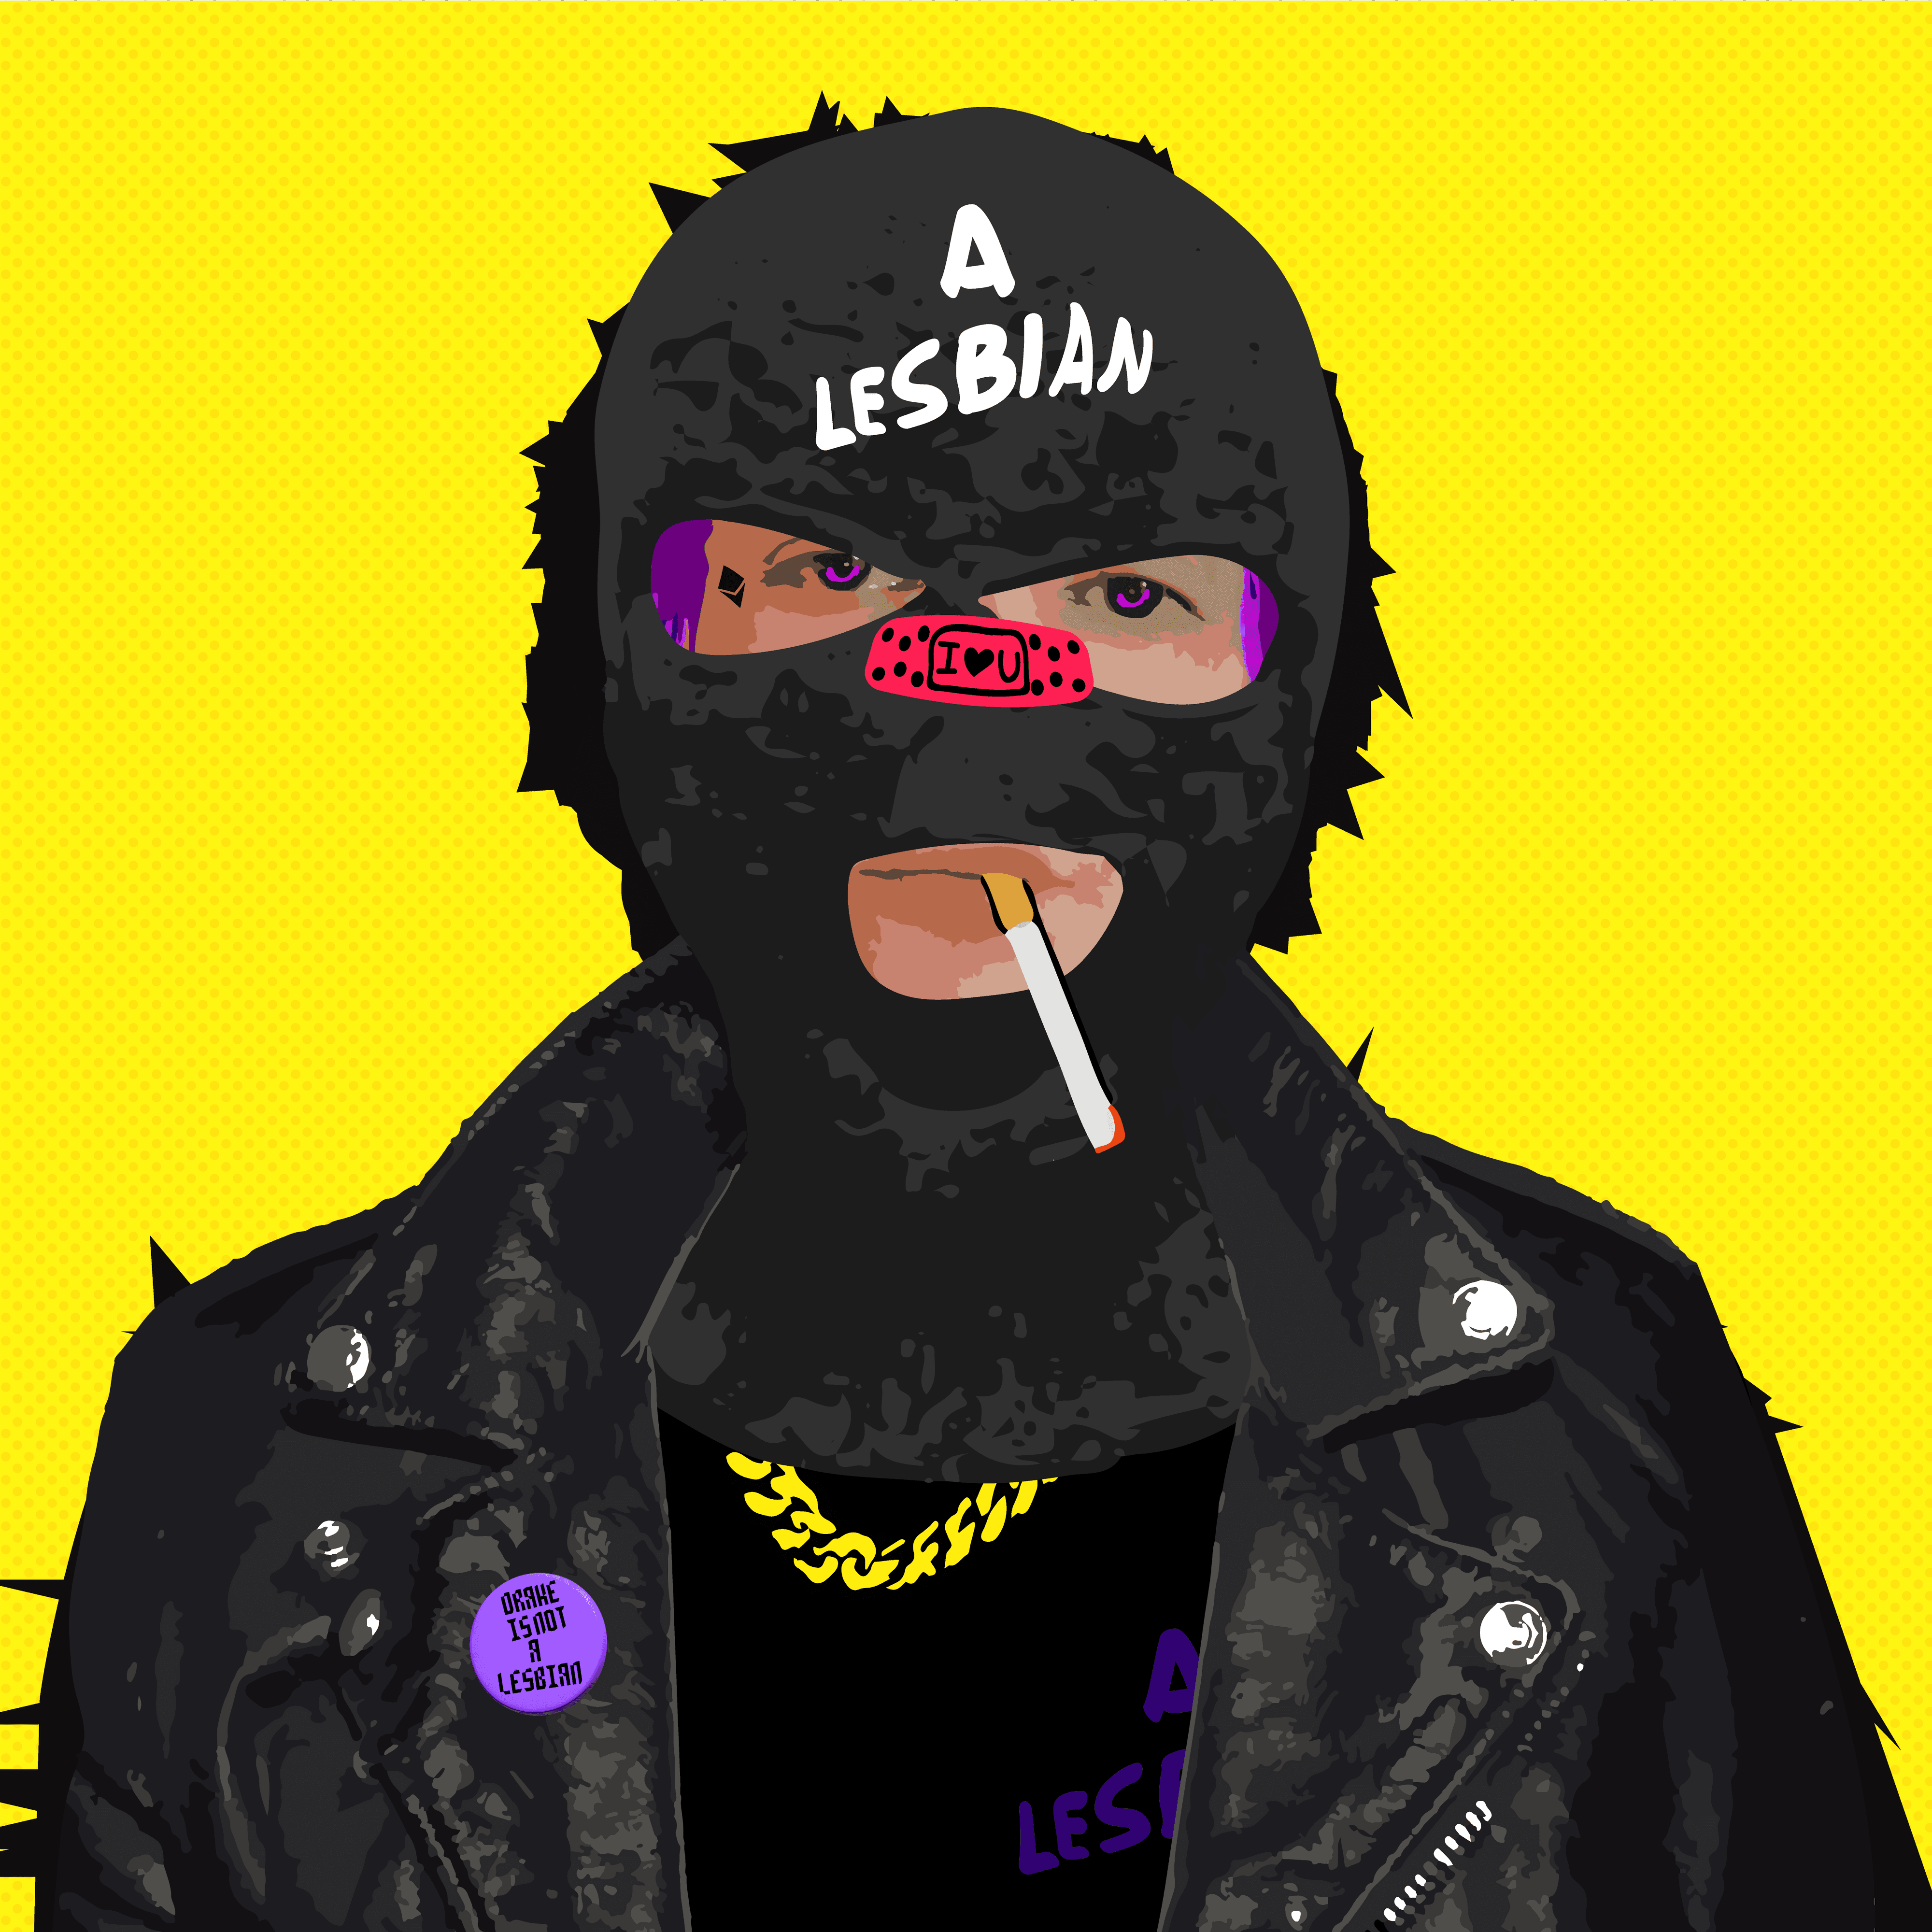 a_lesbian